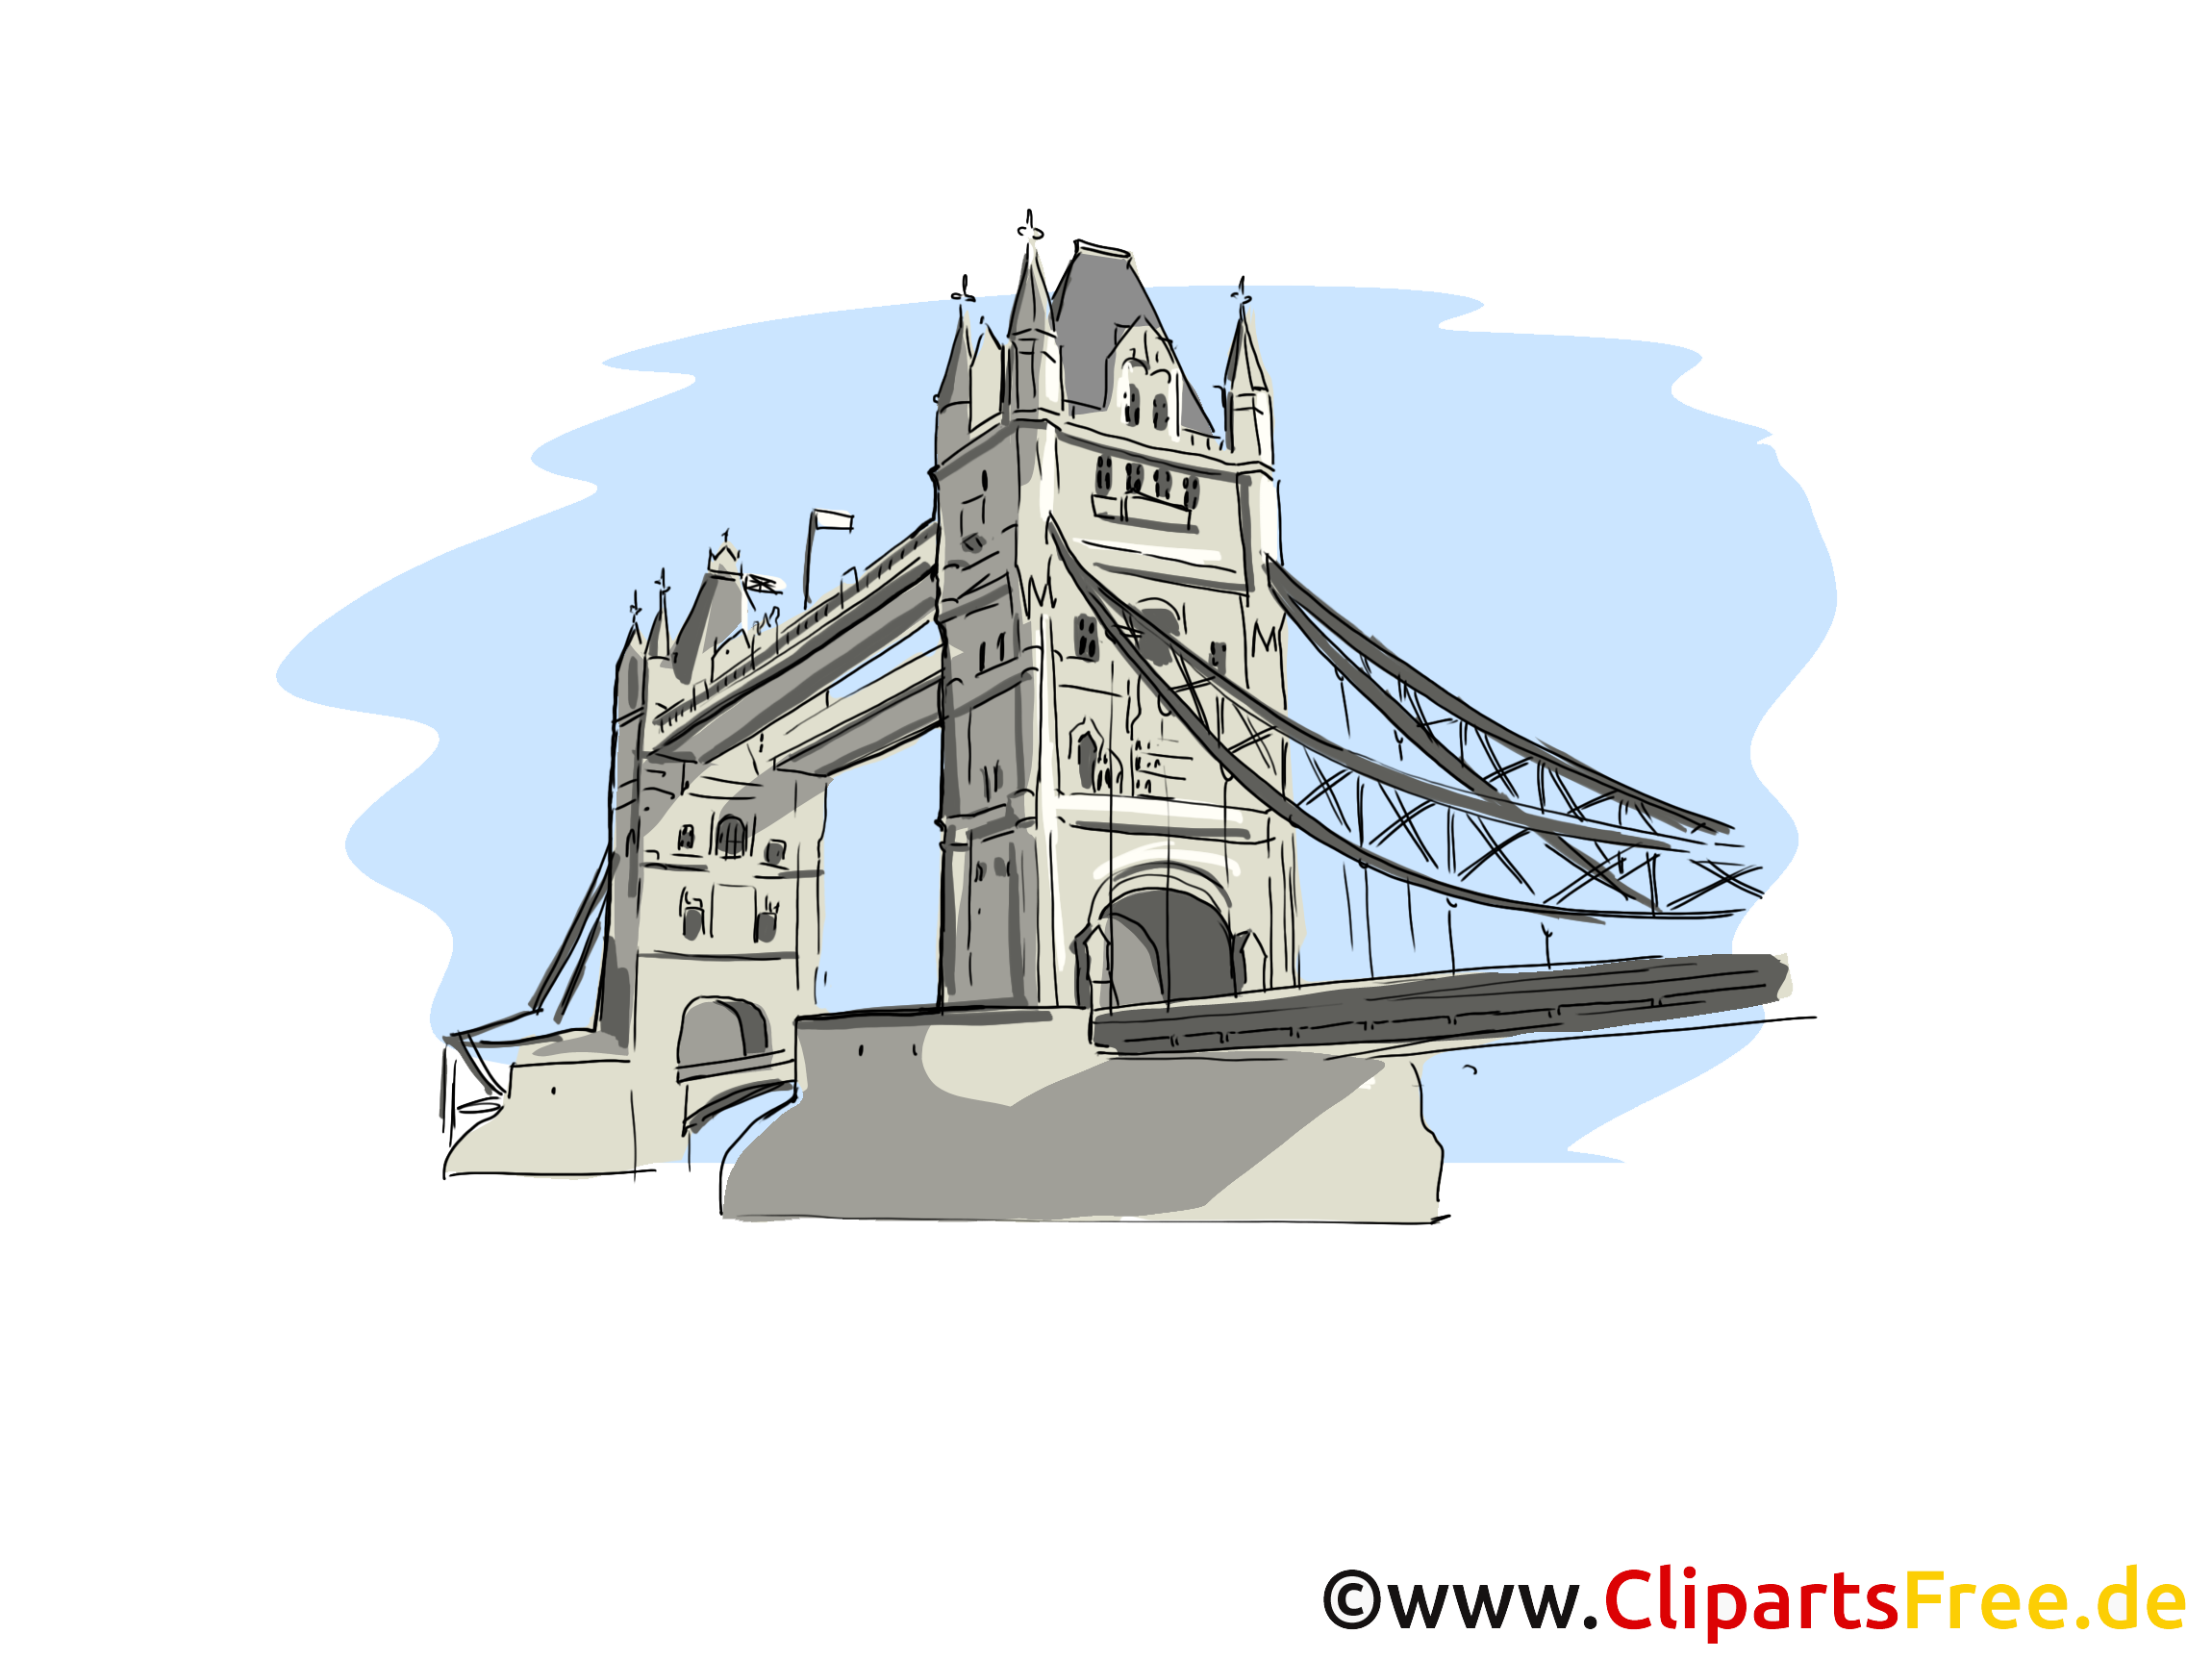 Londres jolie carte - Tower Bridge images gratuites